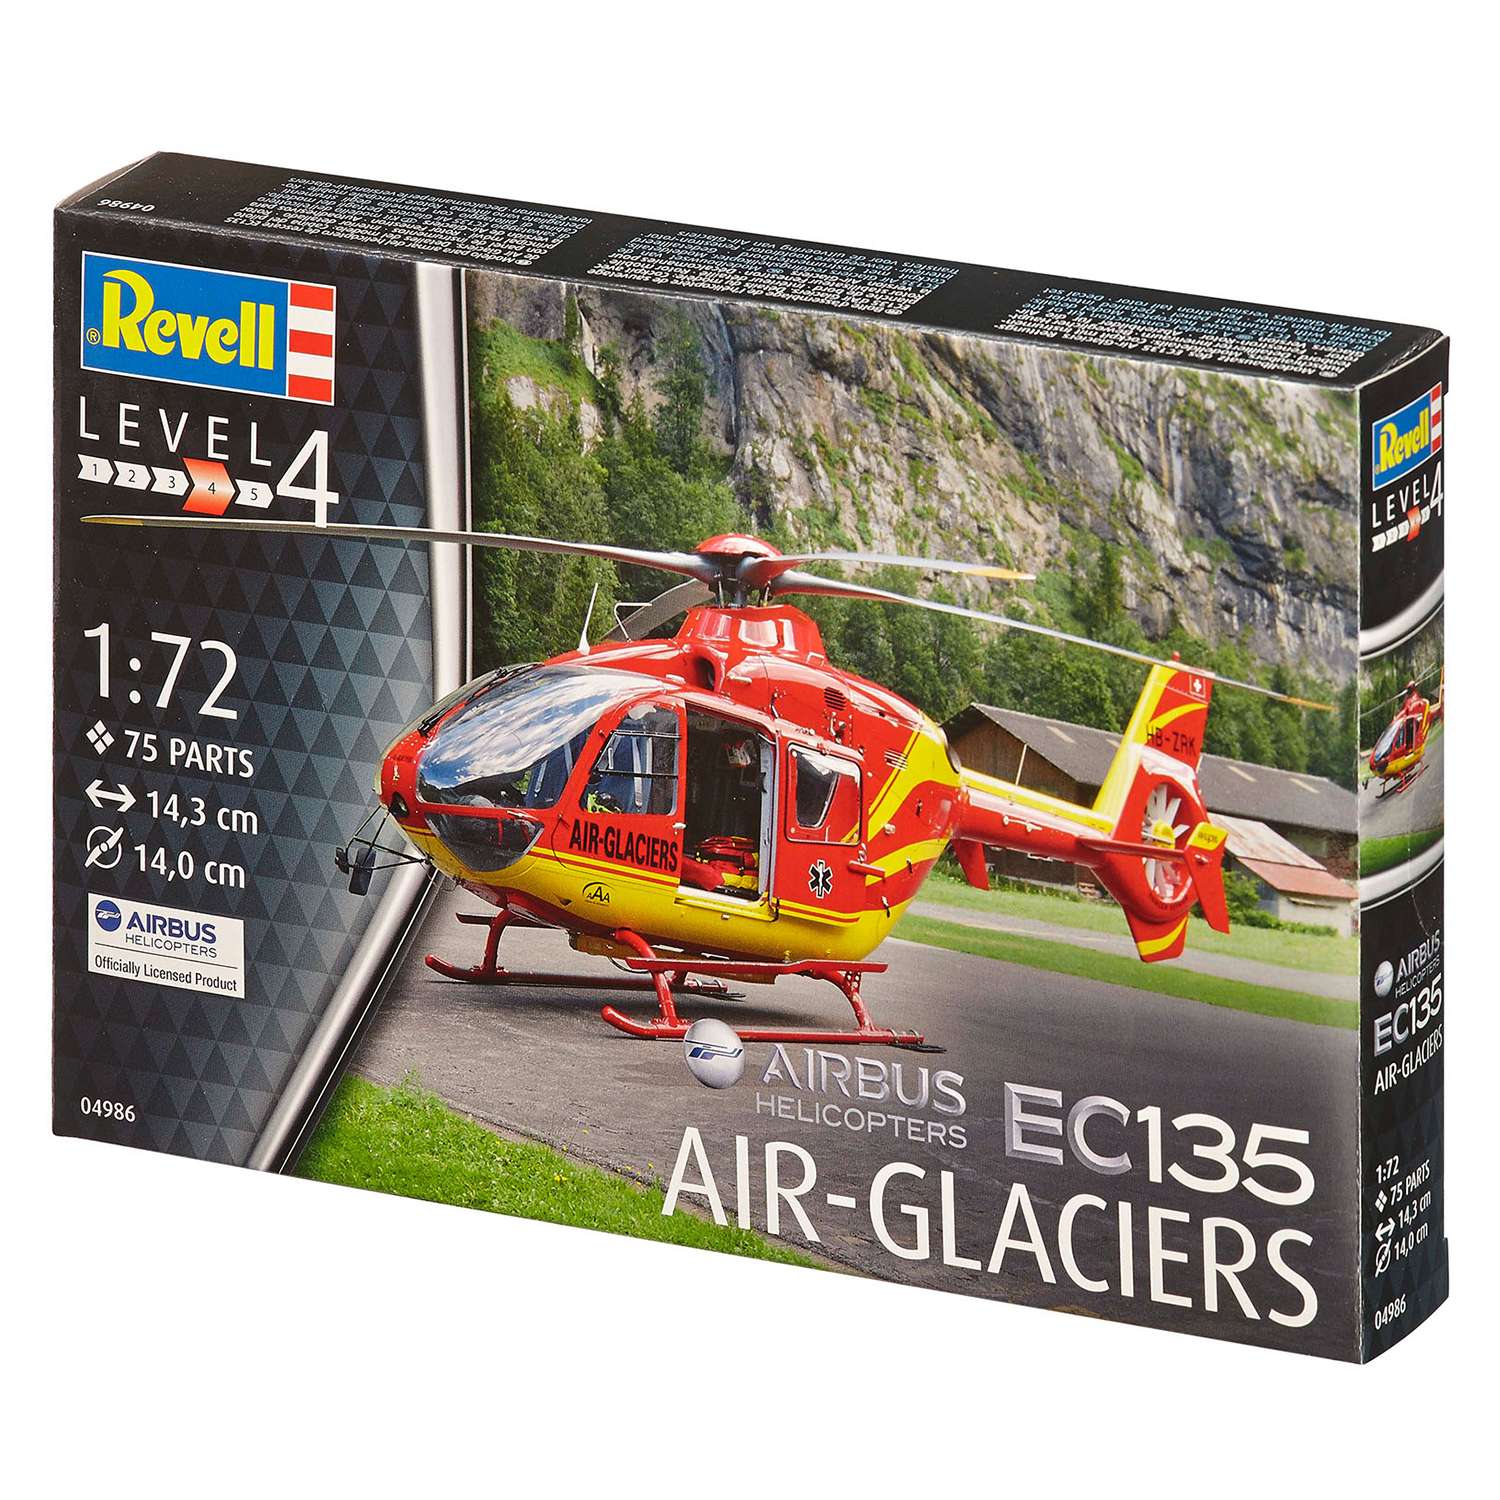 Сборная модель Revell Многоцелевой легкий вертолет EC135 авиакомпании Air-Glaciers 04986 - фото 2